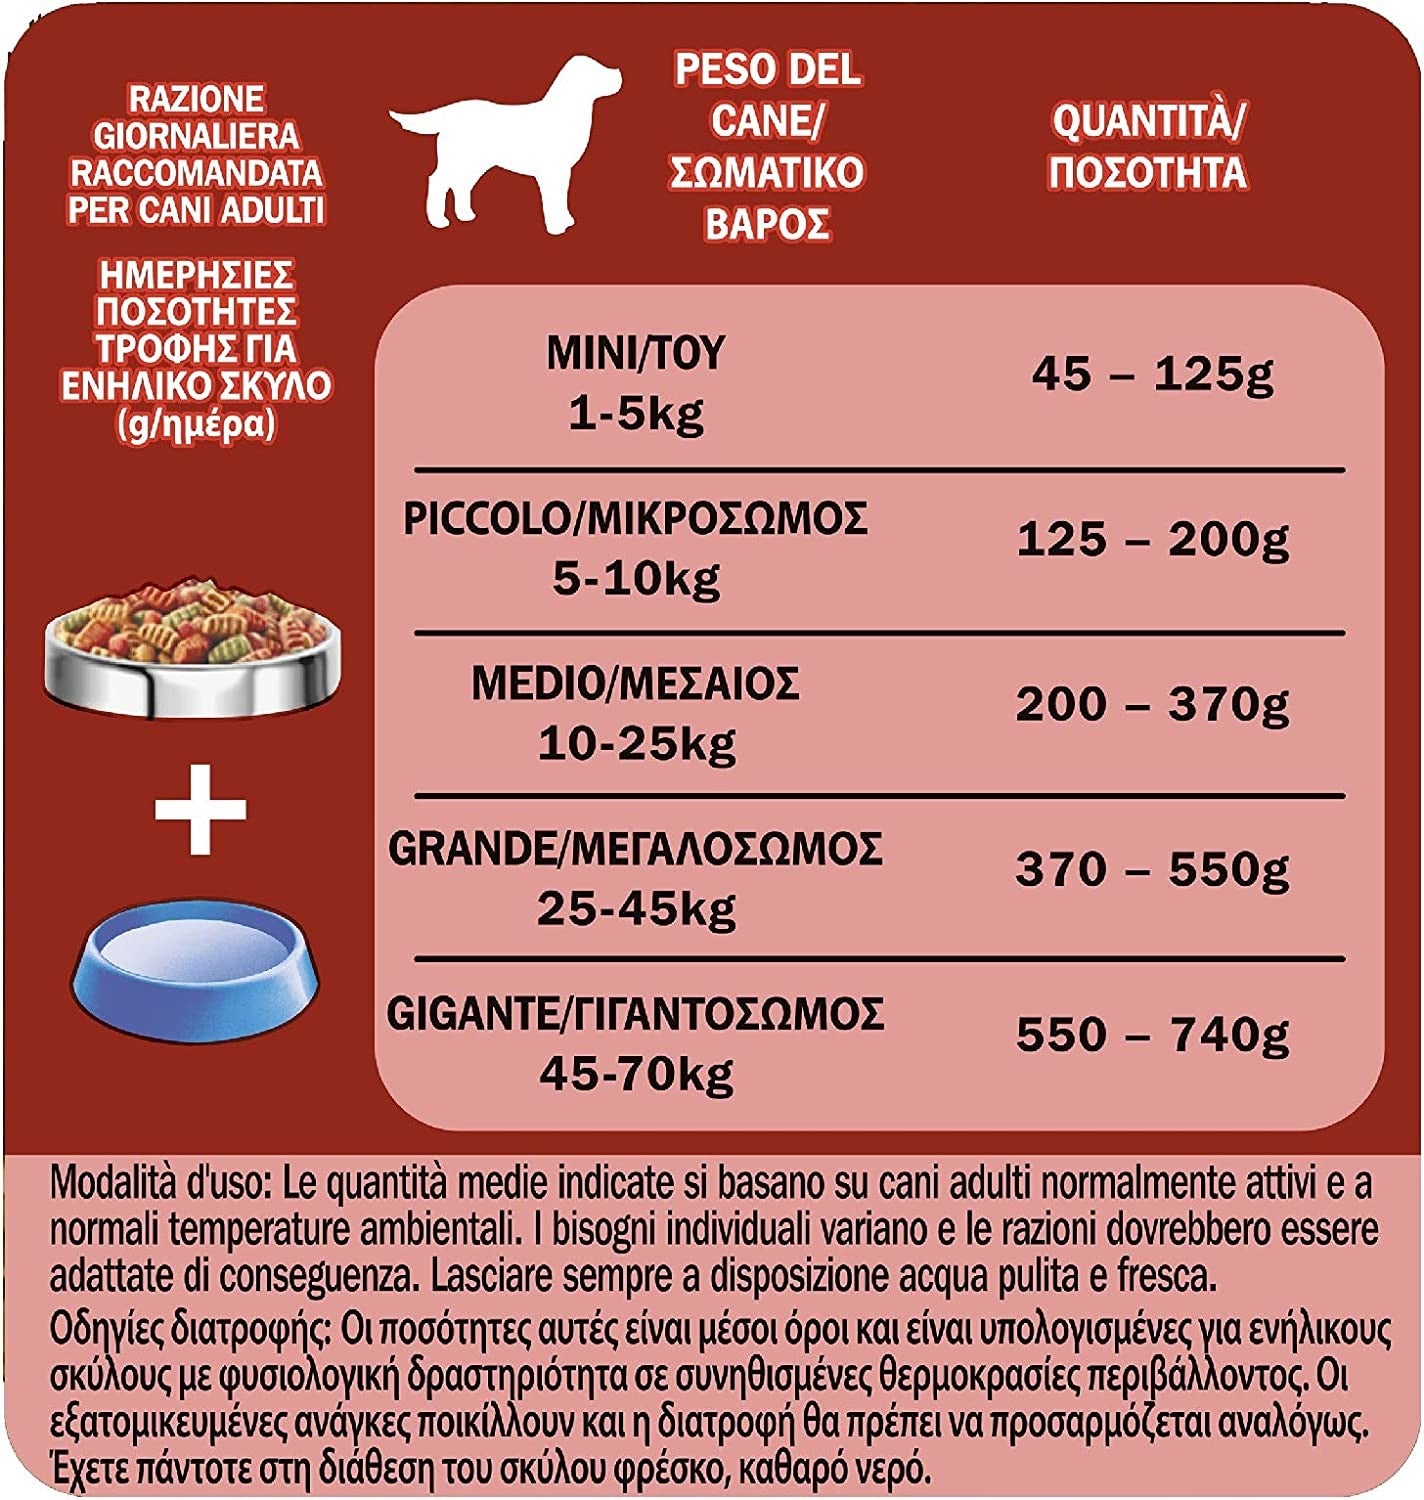 PURINA FRISKIES Crocchette Cane Vitafit Nutri Soft con Manzo, 6 sacchi da 1,5 kg ciascuno